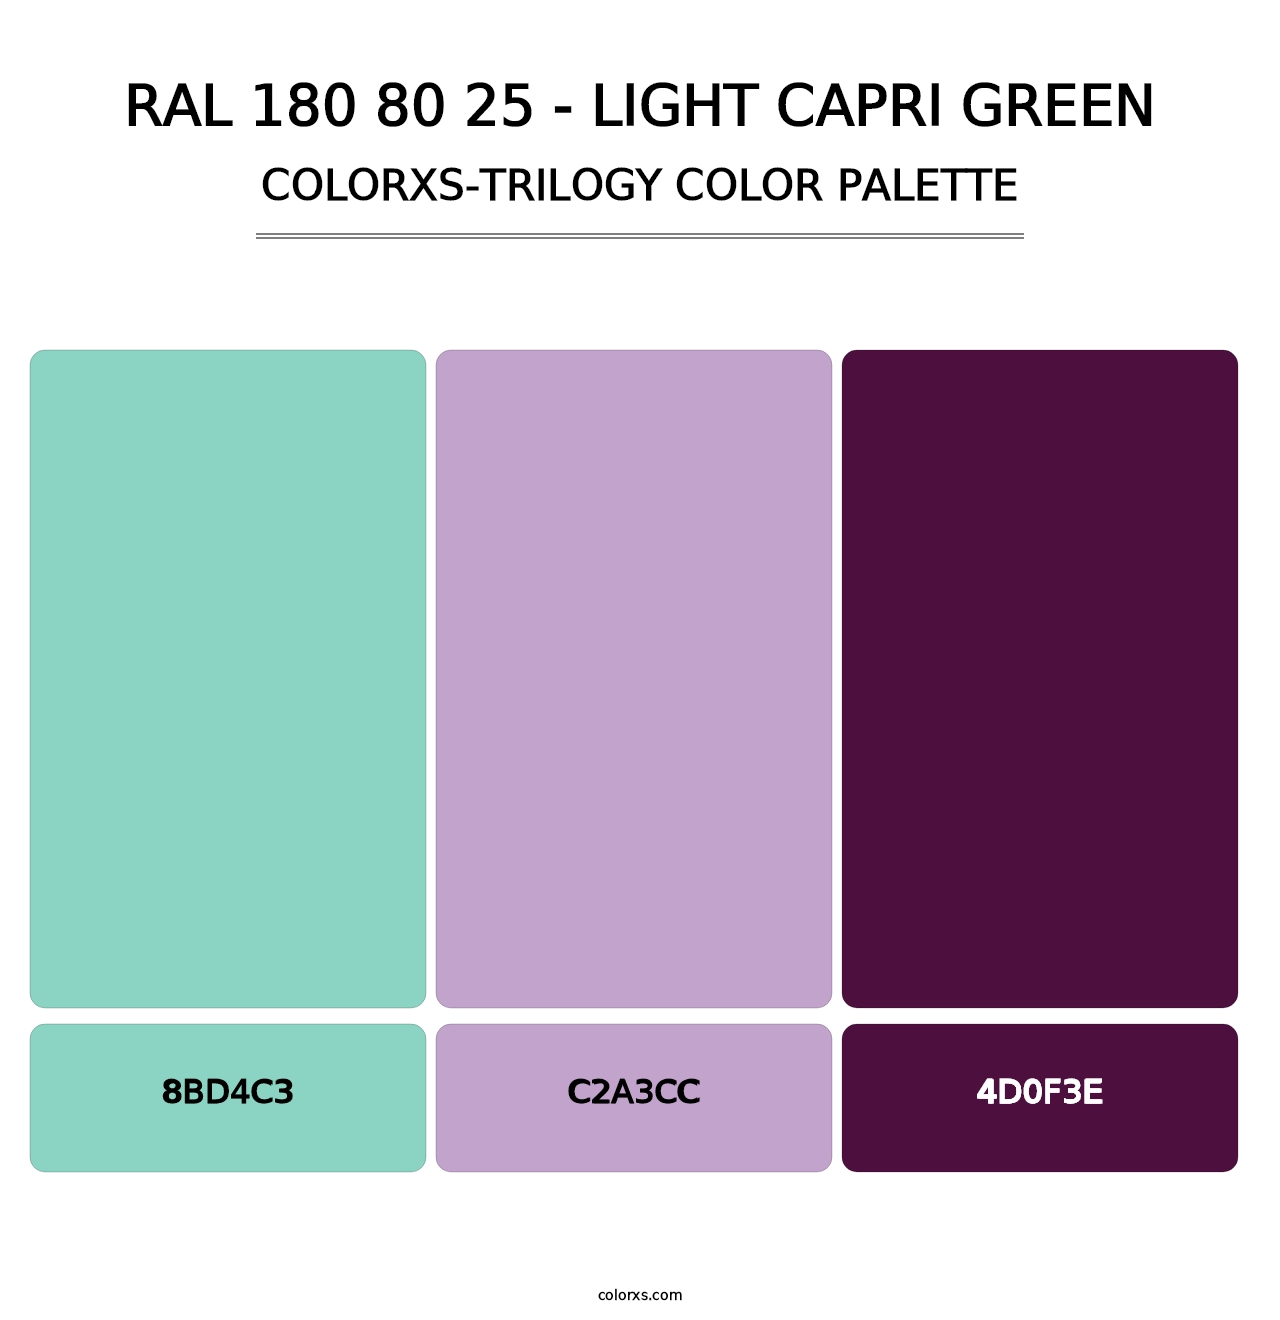 RAL 180 80 25 - Light Capri Green - Colorxs Trilogy Palette